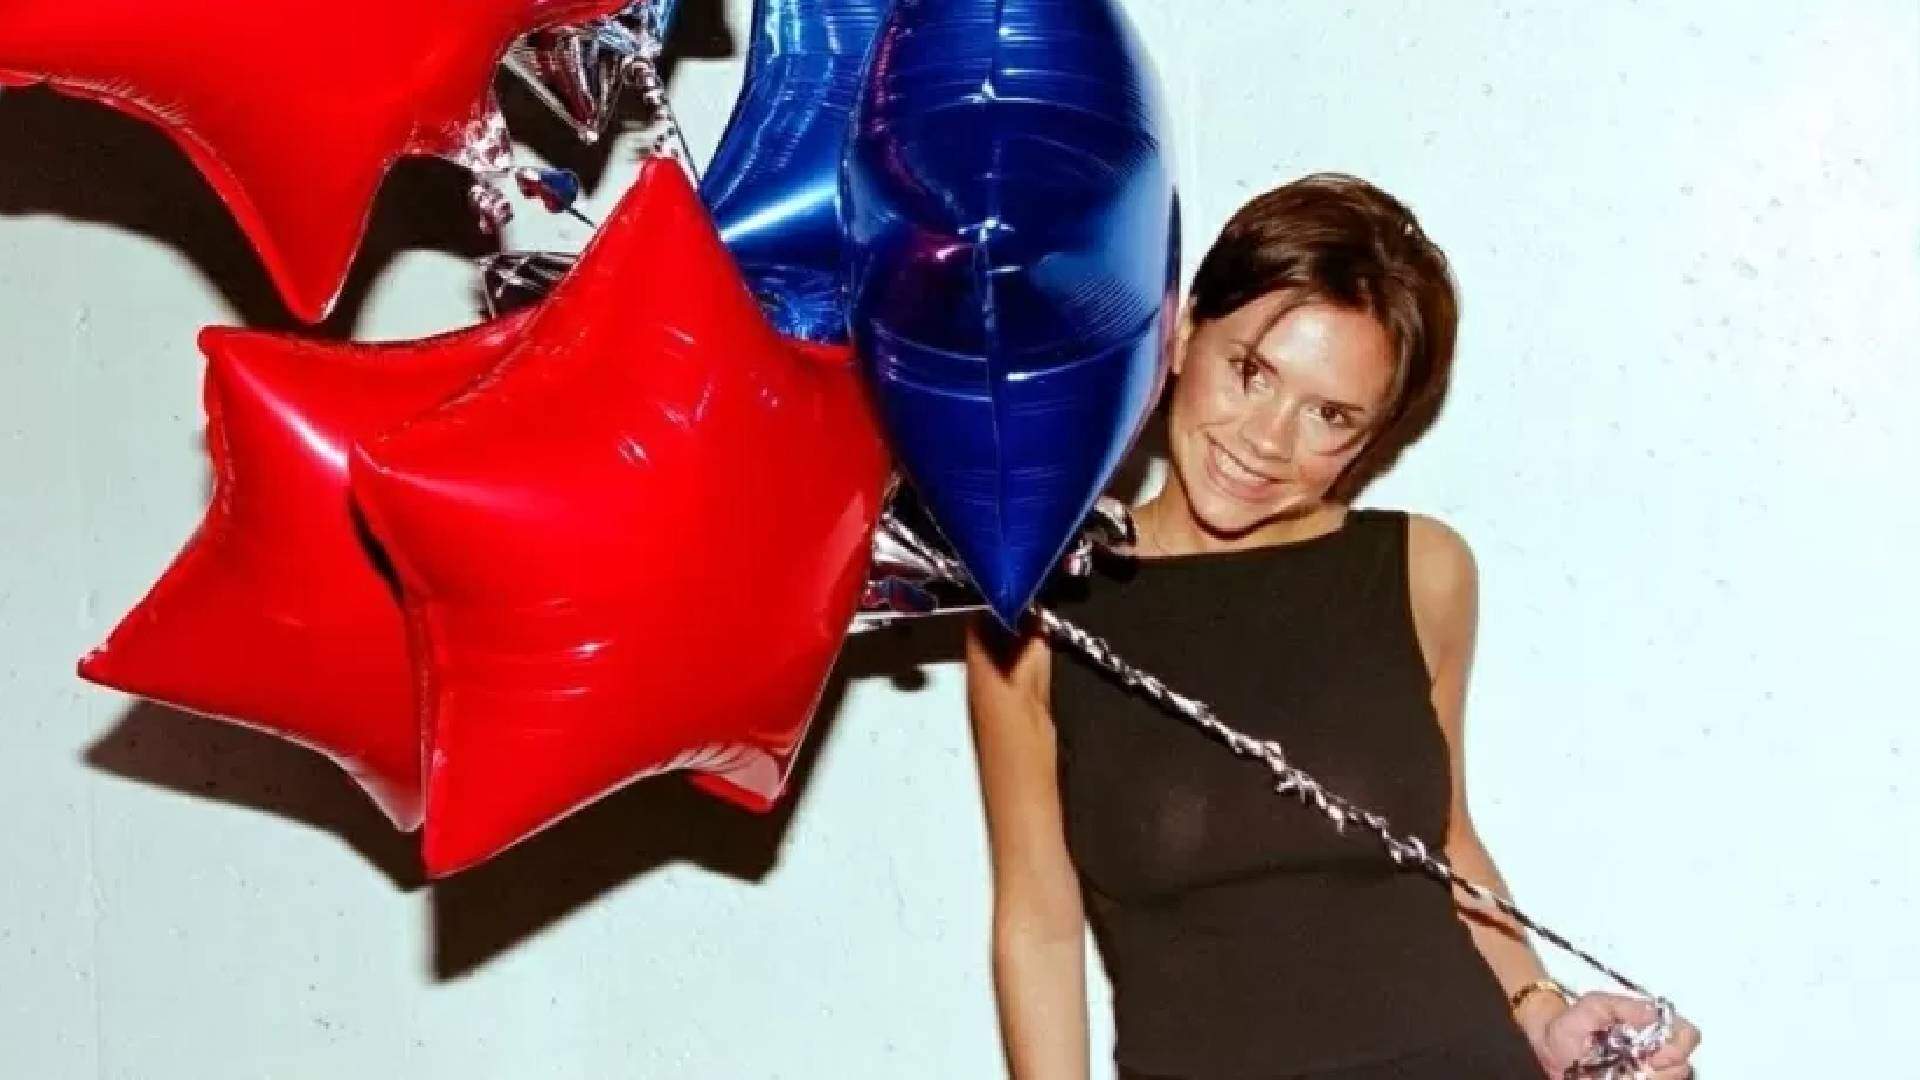 Victoria Beckham é flagrada cantando sucesso das Spice Girls em momento descontraído - Metropolitana FM